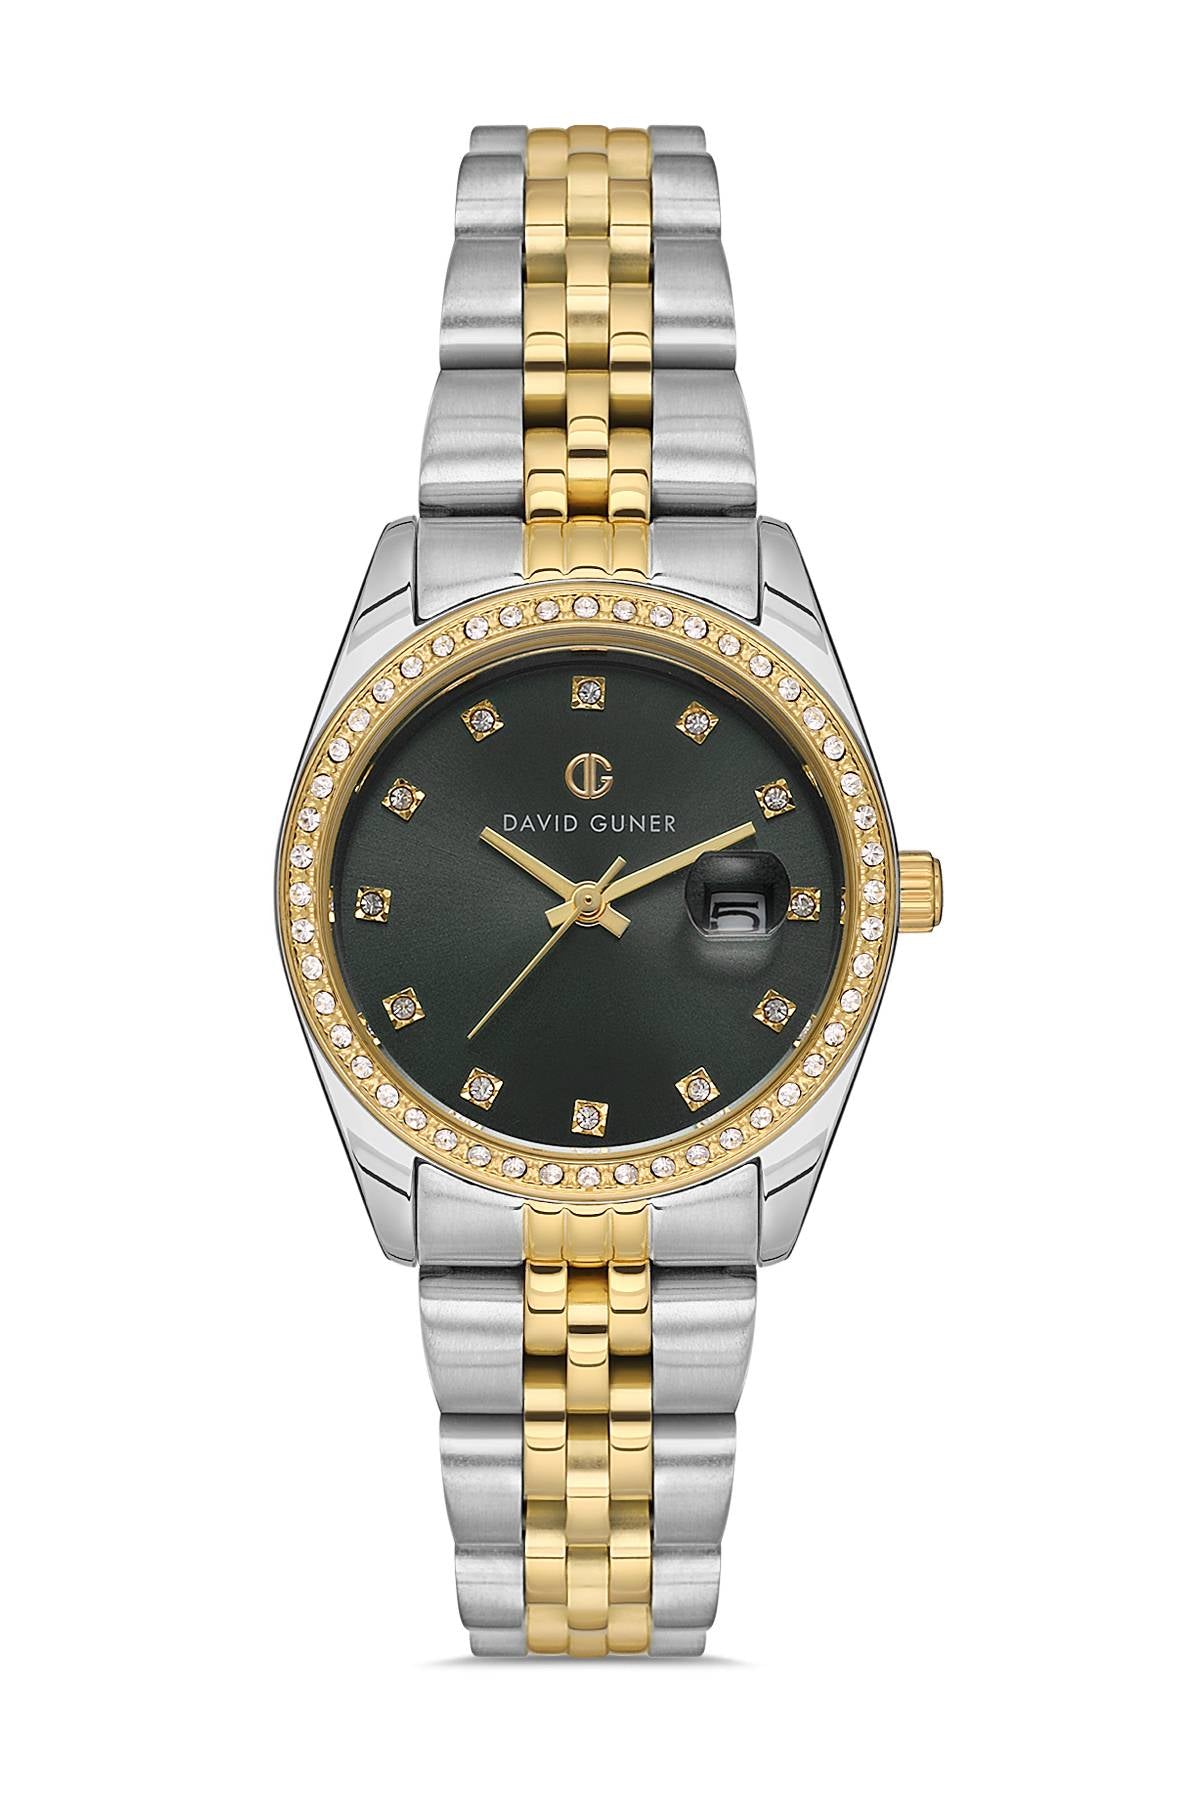 David Guner Silver Dial Calendar Women's Wristwatch